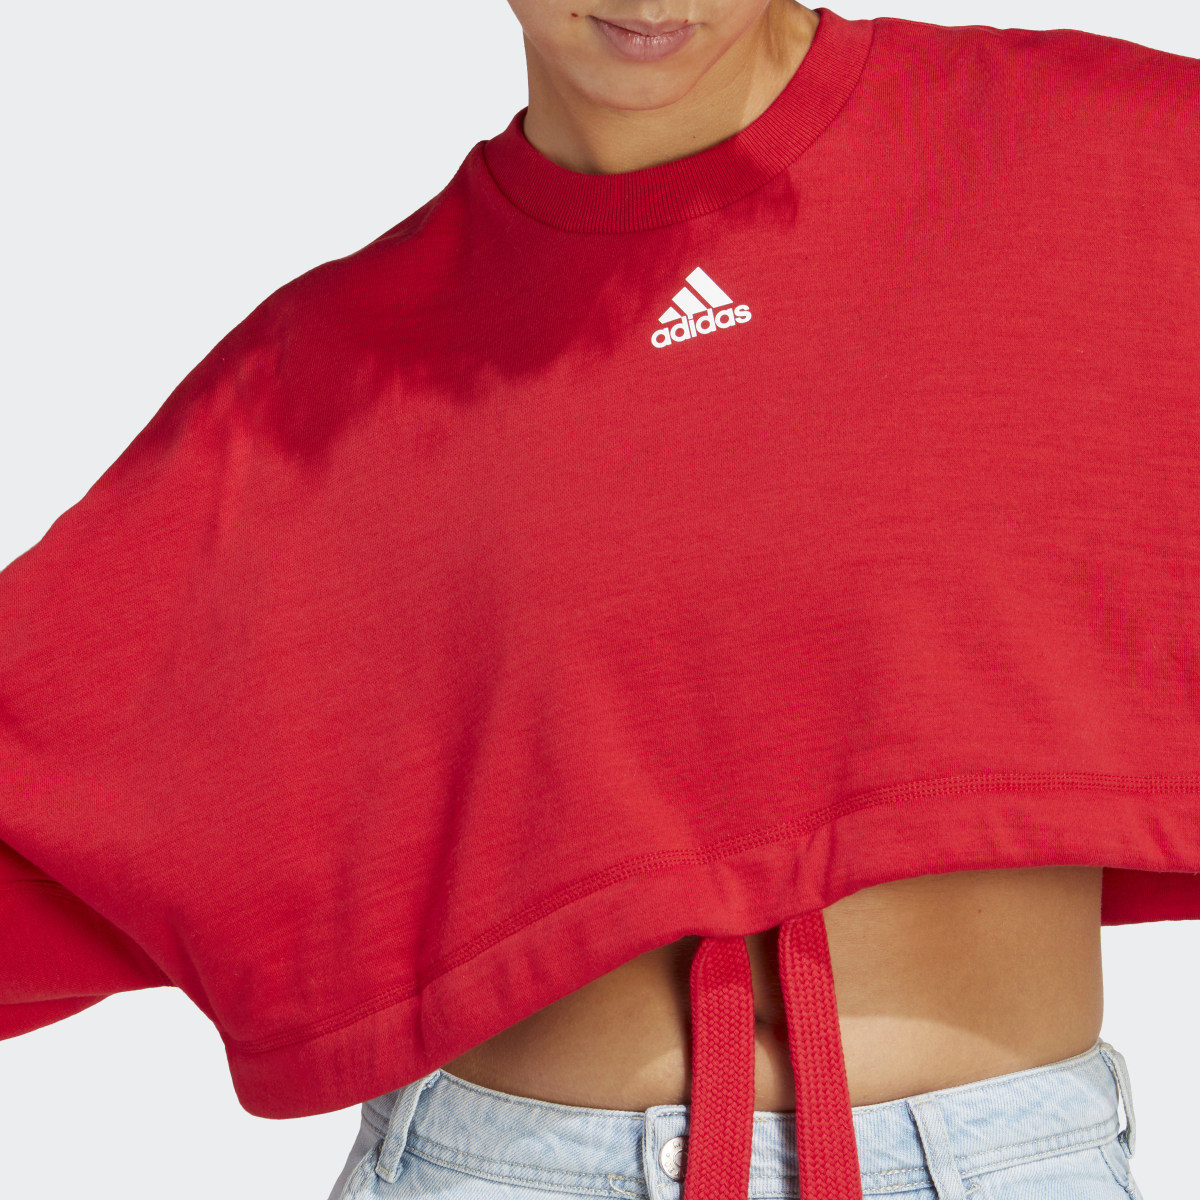 Adidas Dance Crop Versatile Sweatshirt. 6